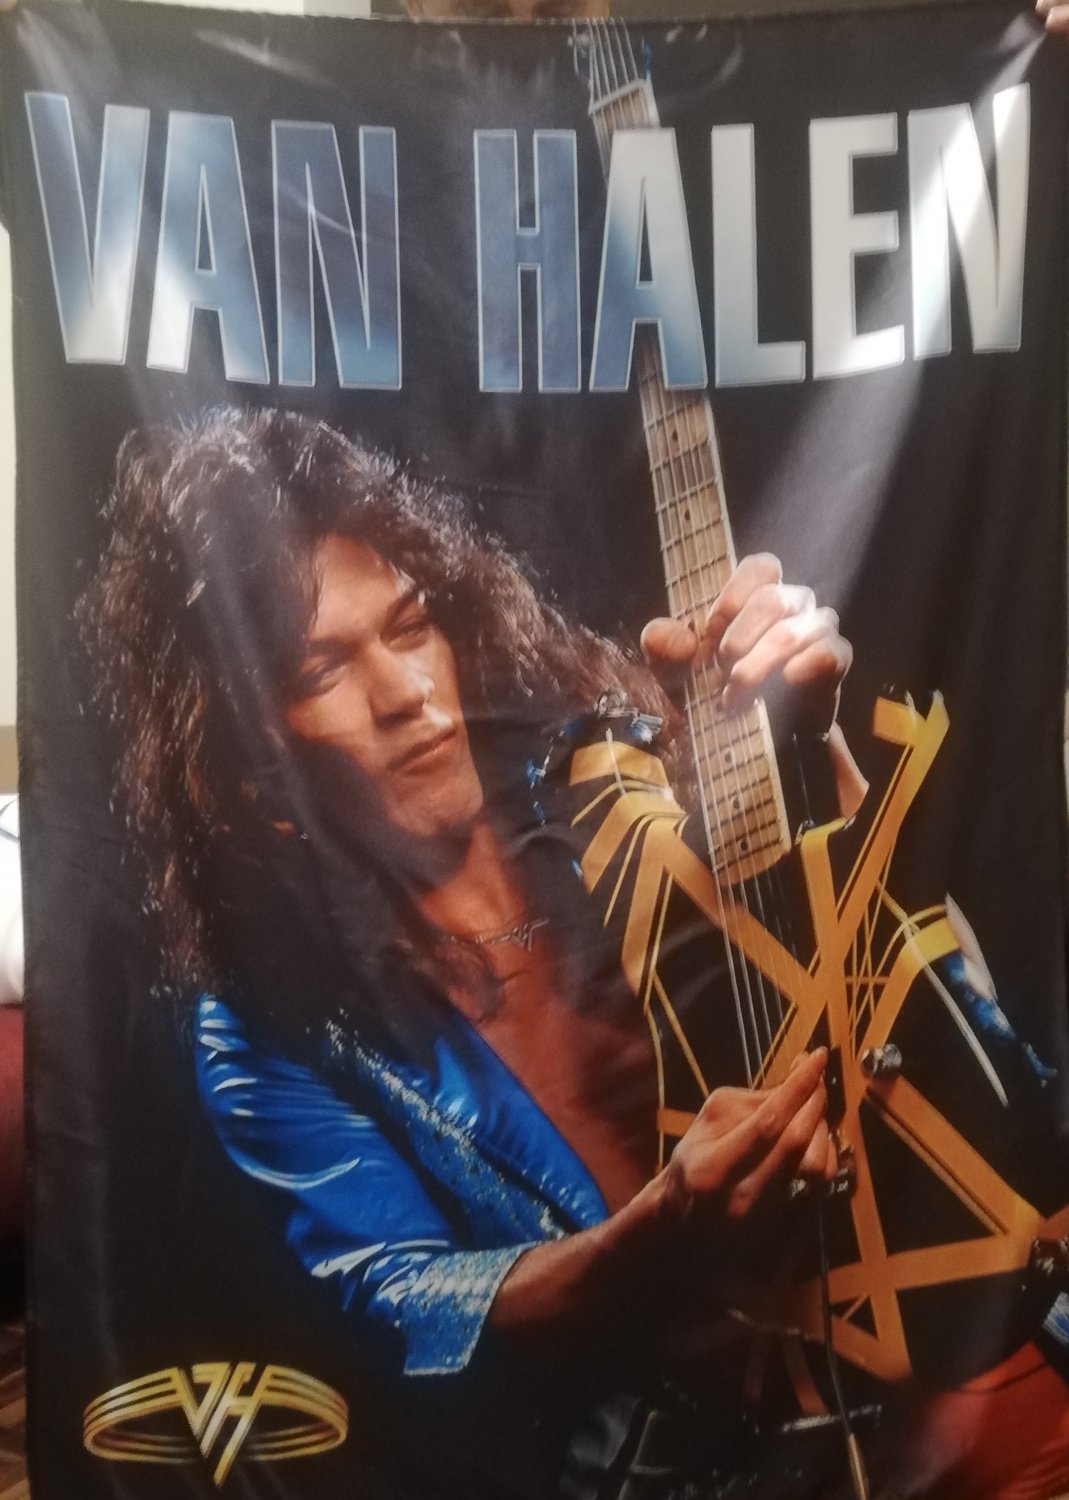 VAN HALEN First album HUGE 4X4 BANNER fabric poster tapestry cd album flag 